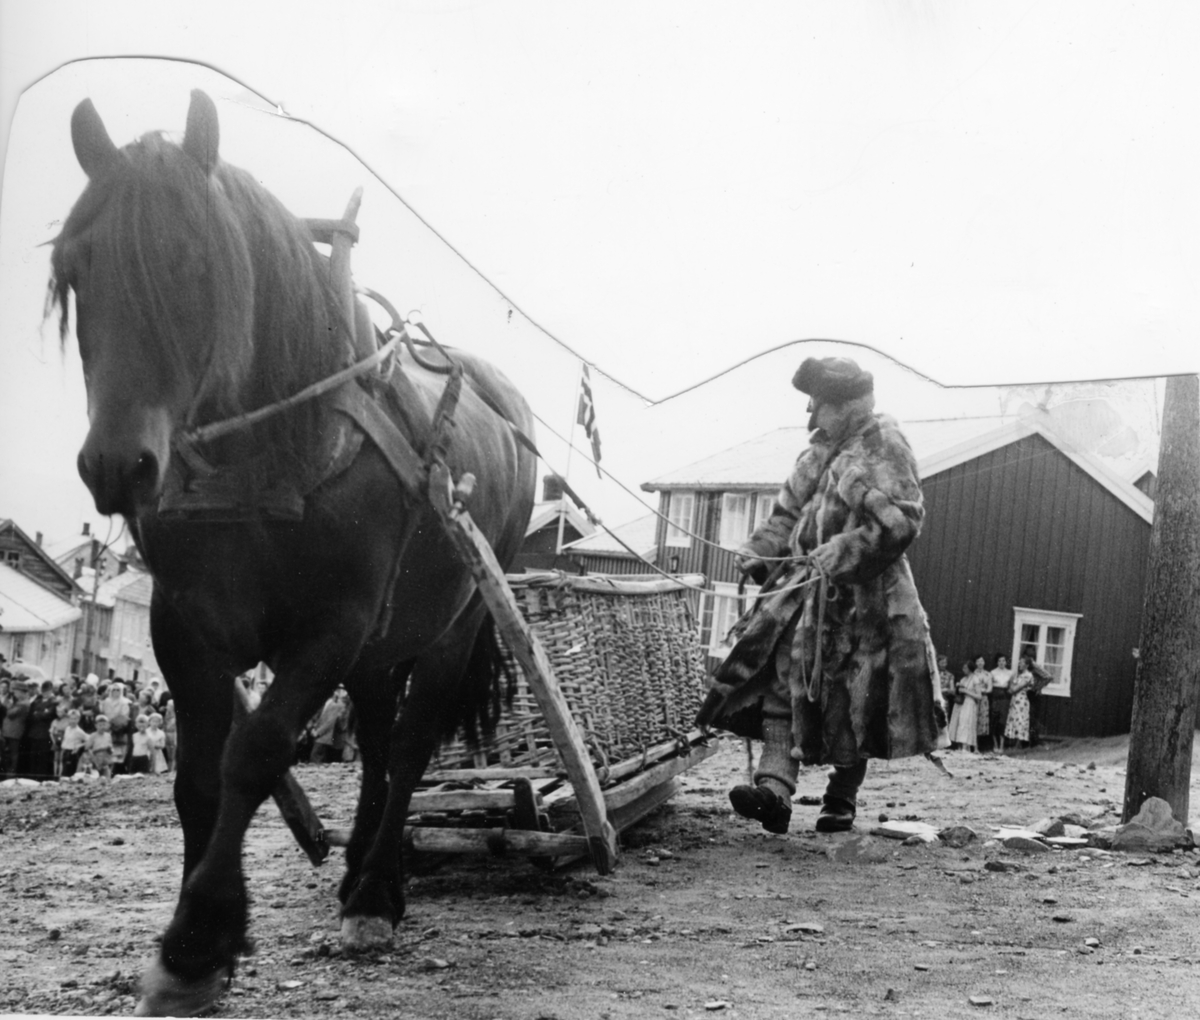 Kølkjører under det historiske opptoget på Bergmannsdagen, ant. i 1951. Hest med slae og kølkorg, og "kølkjører" i mudd